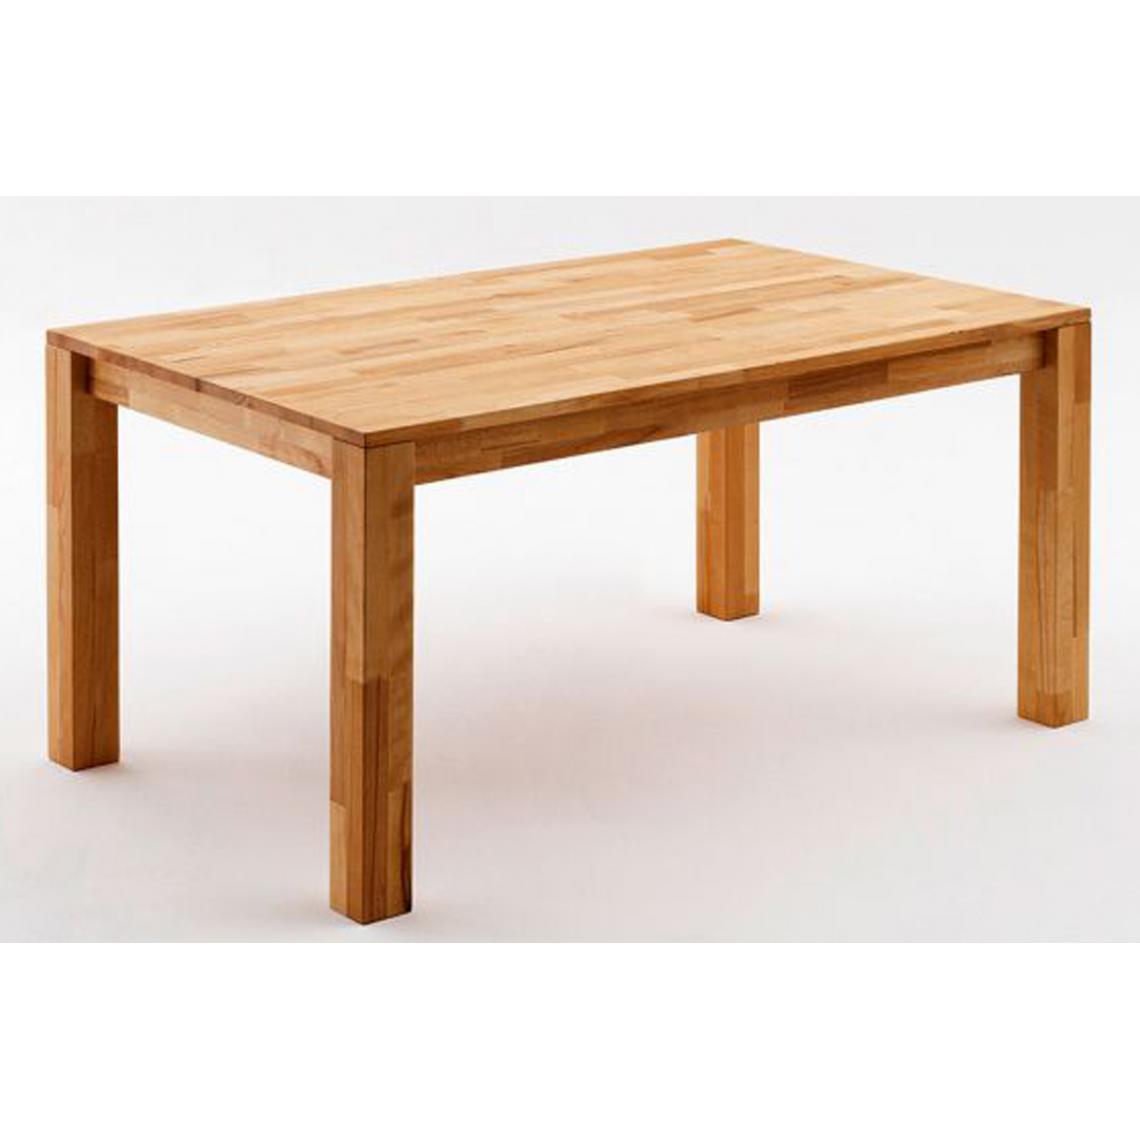 Pegane - Table de salle à manger en chêne sauvage huilé - L.140 x H.77 x P.80 cm - Tables à manger